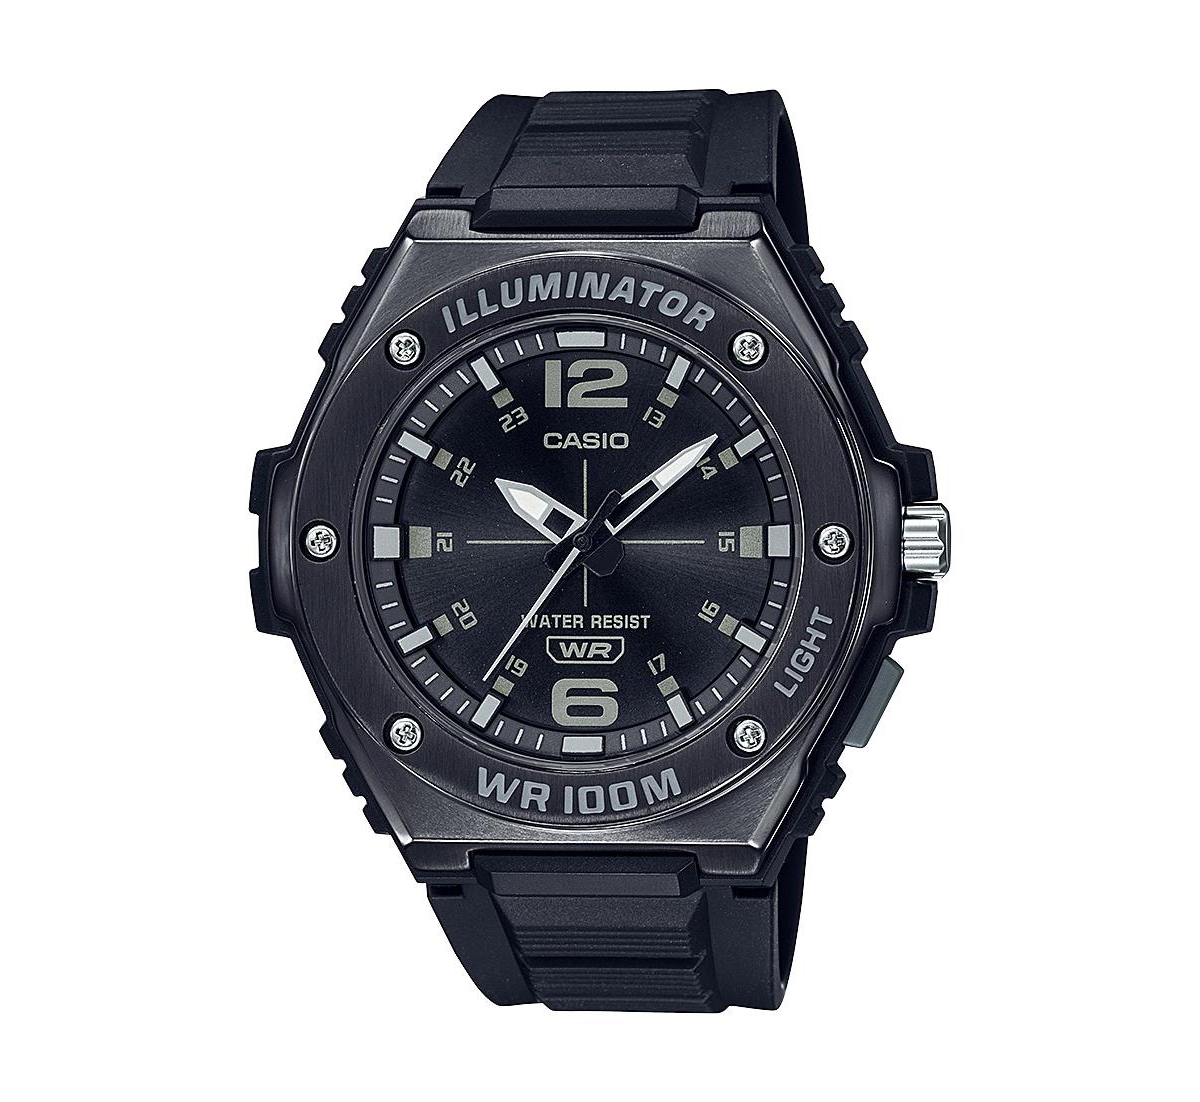 Casio Men's Three-Hand Black Resin Watch 49.6mm, MWA100HB-1AV